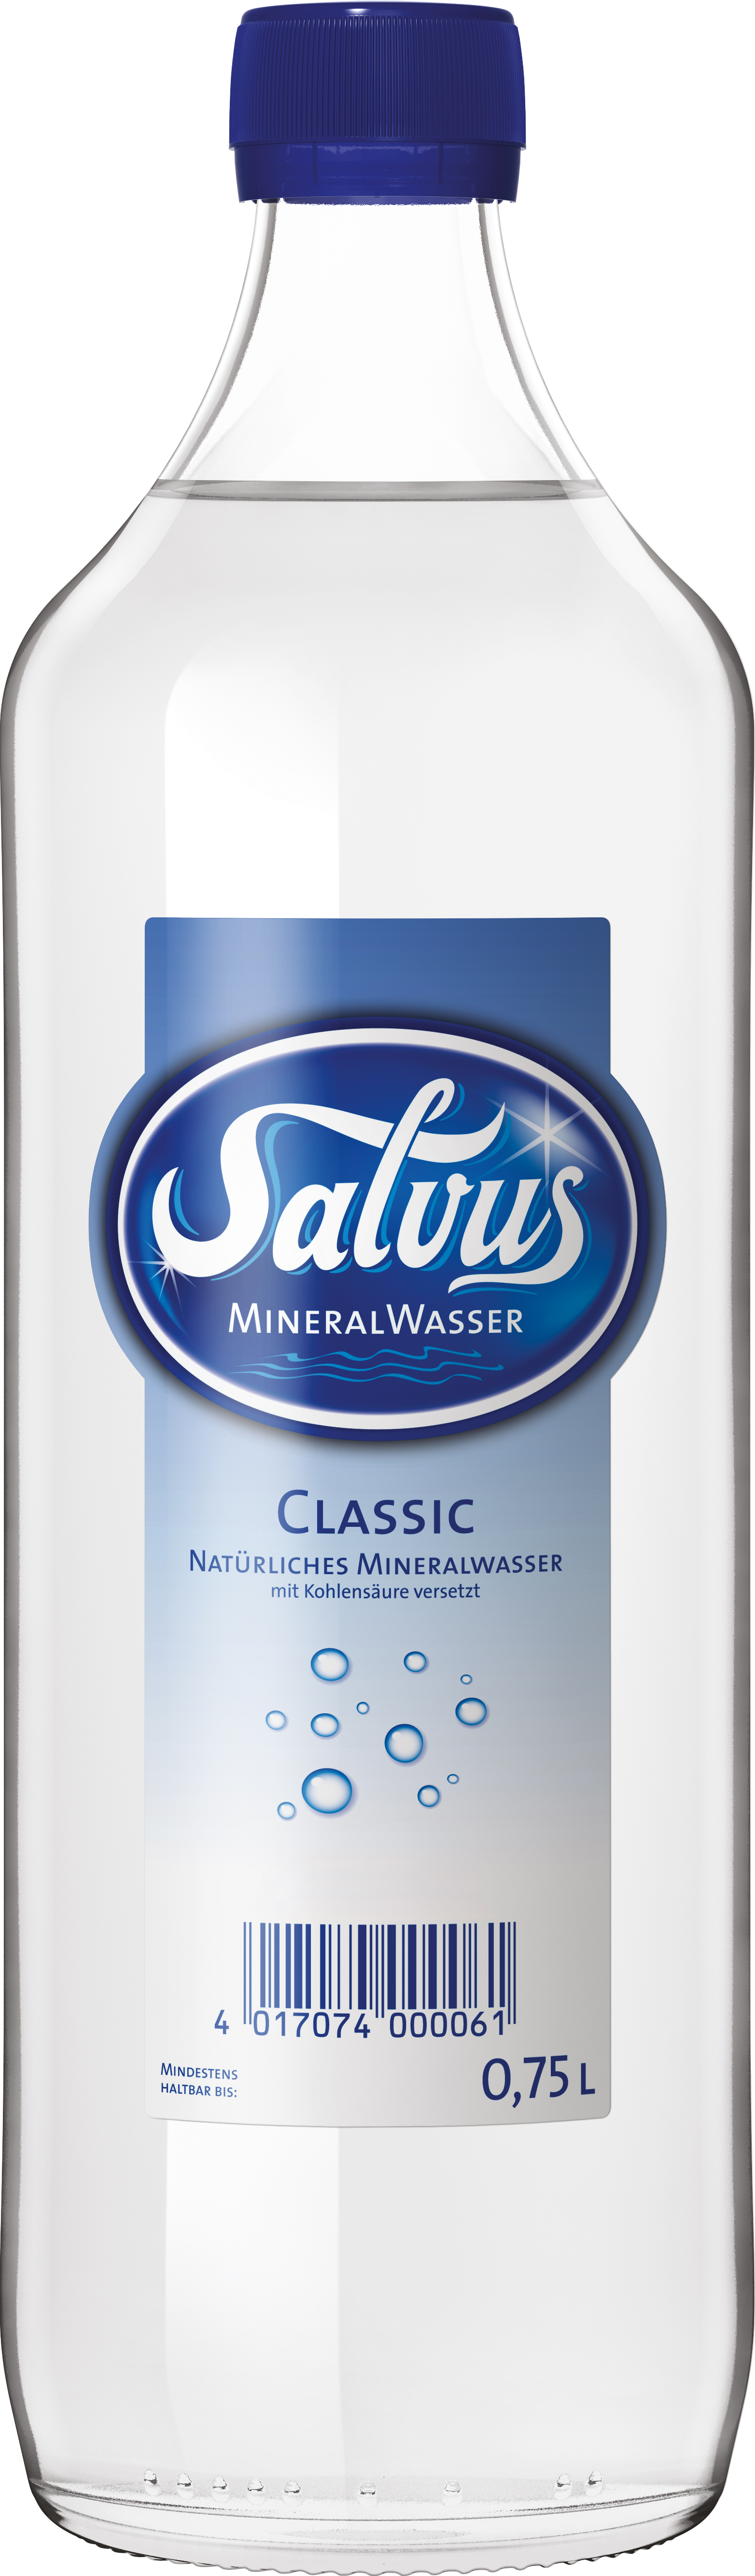 Salvus Classic 12x0,75l (Glas) MW